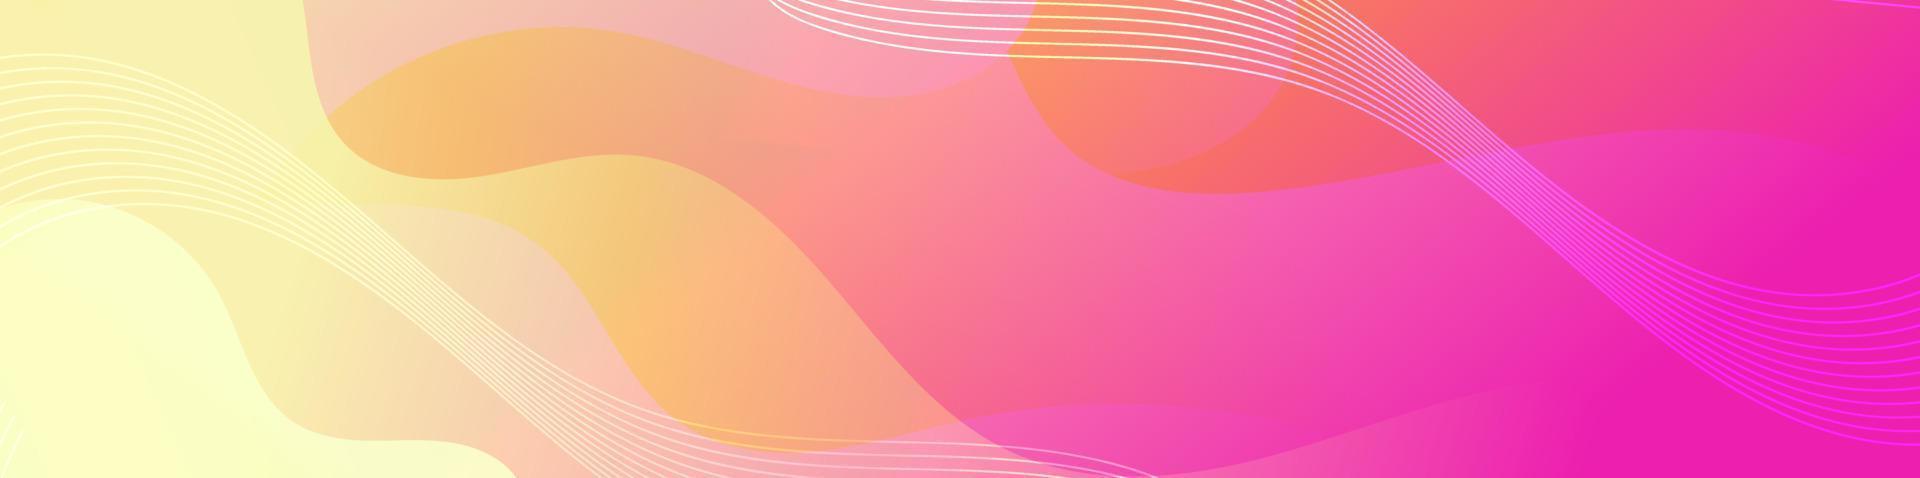 modelo de banner de onda fluida colorida abstrata vetor